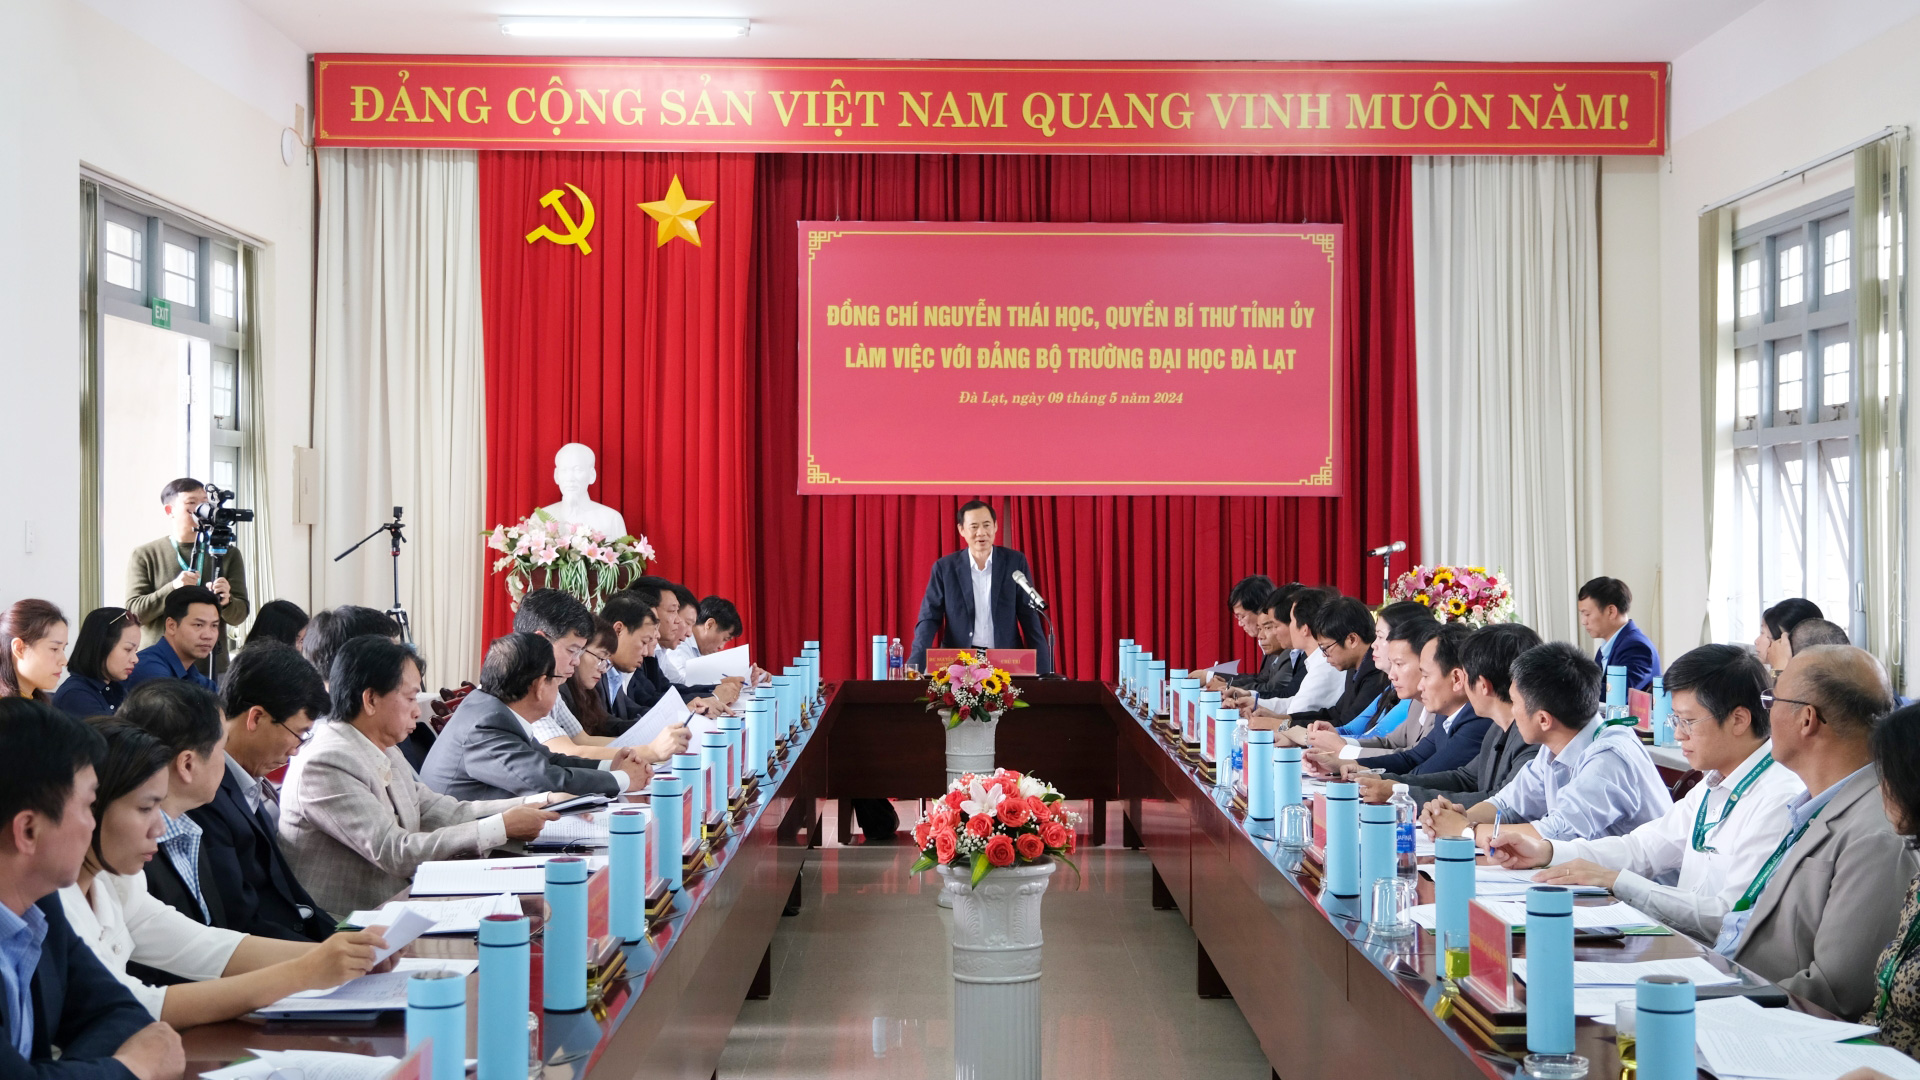 Cần quyết liệt trong công tác đào tạo, giới thiệu nguồn nhân lực trẻ cho tỉnh Lâm Đồng